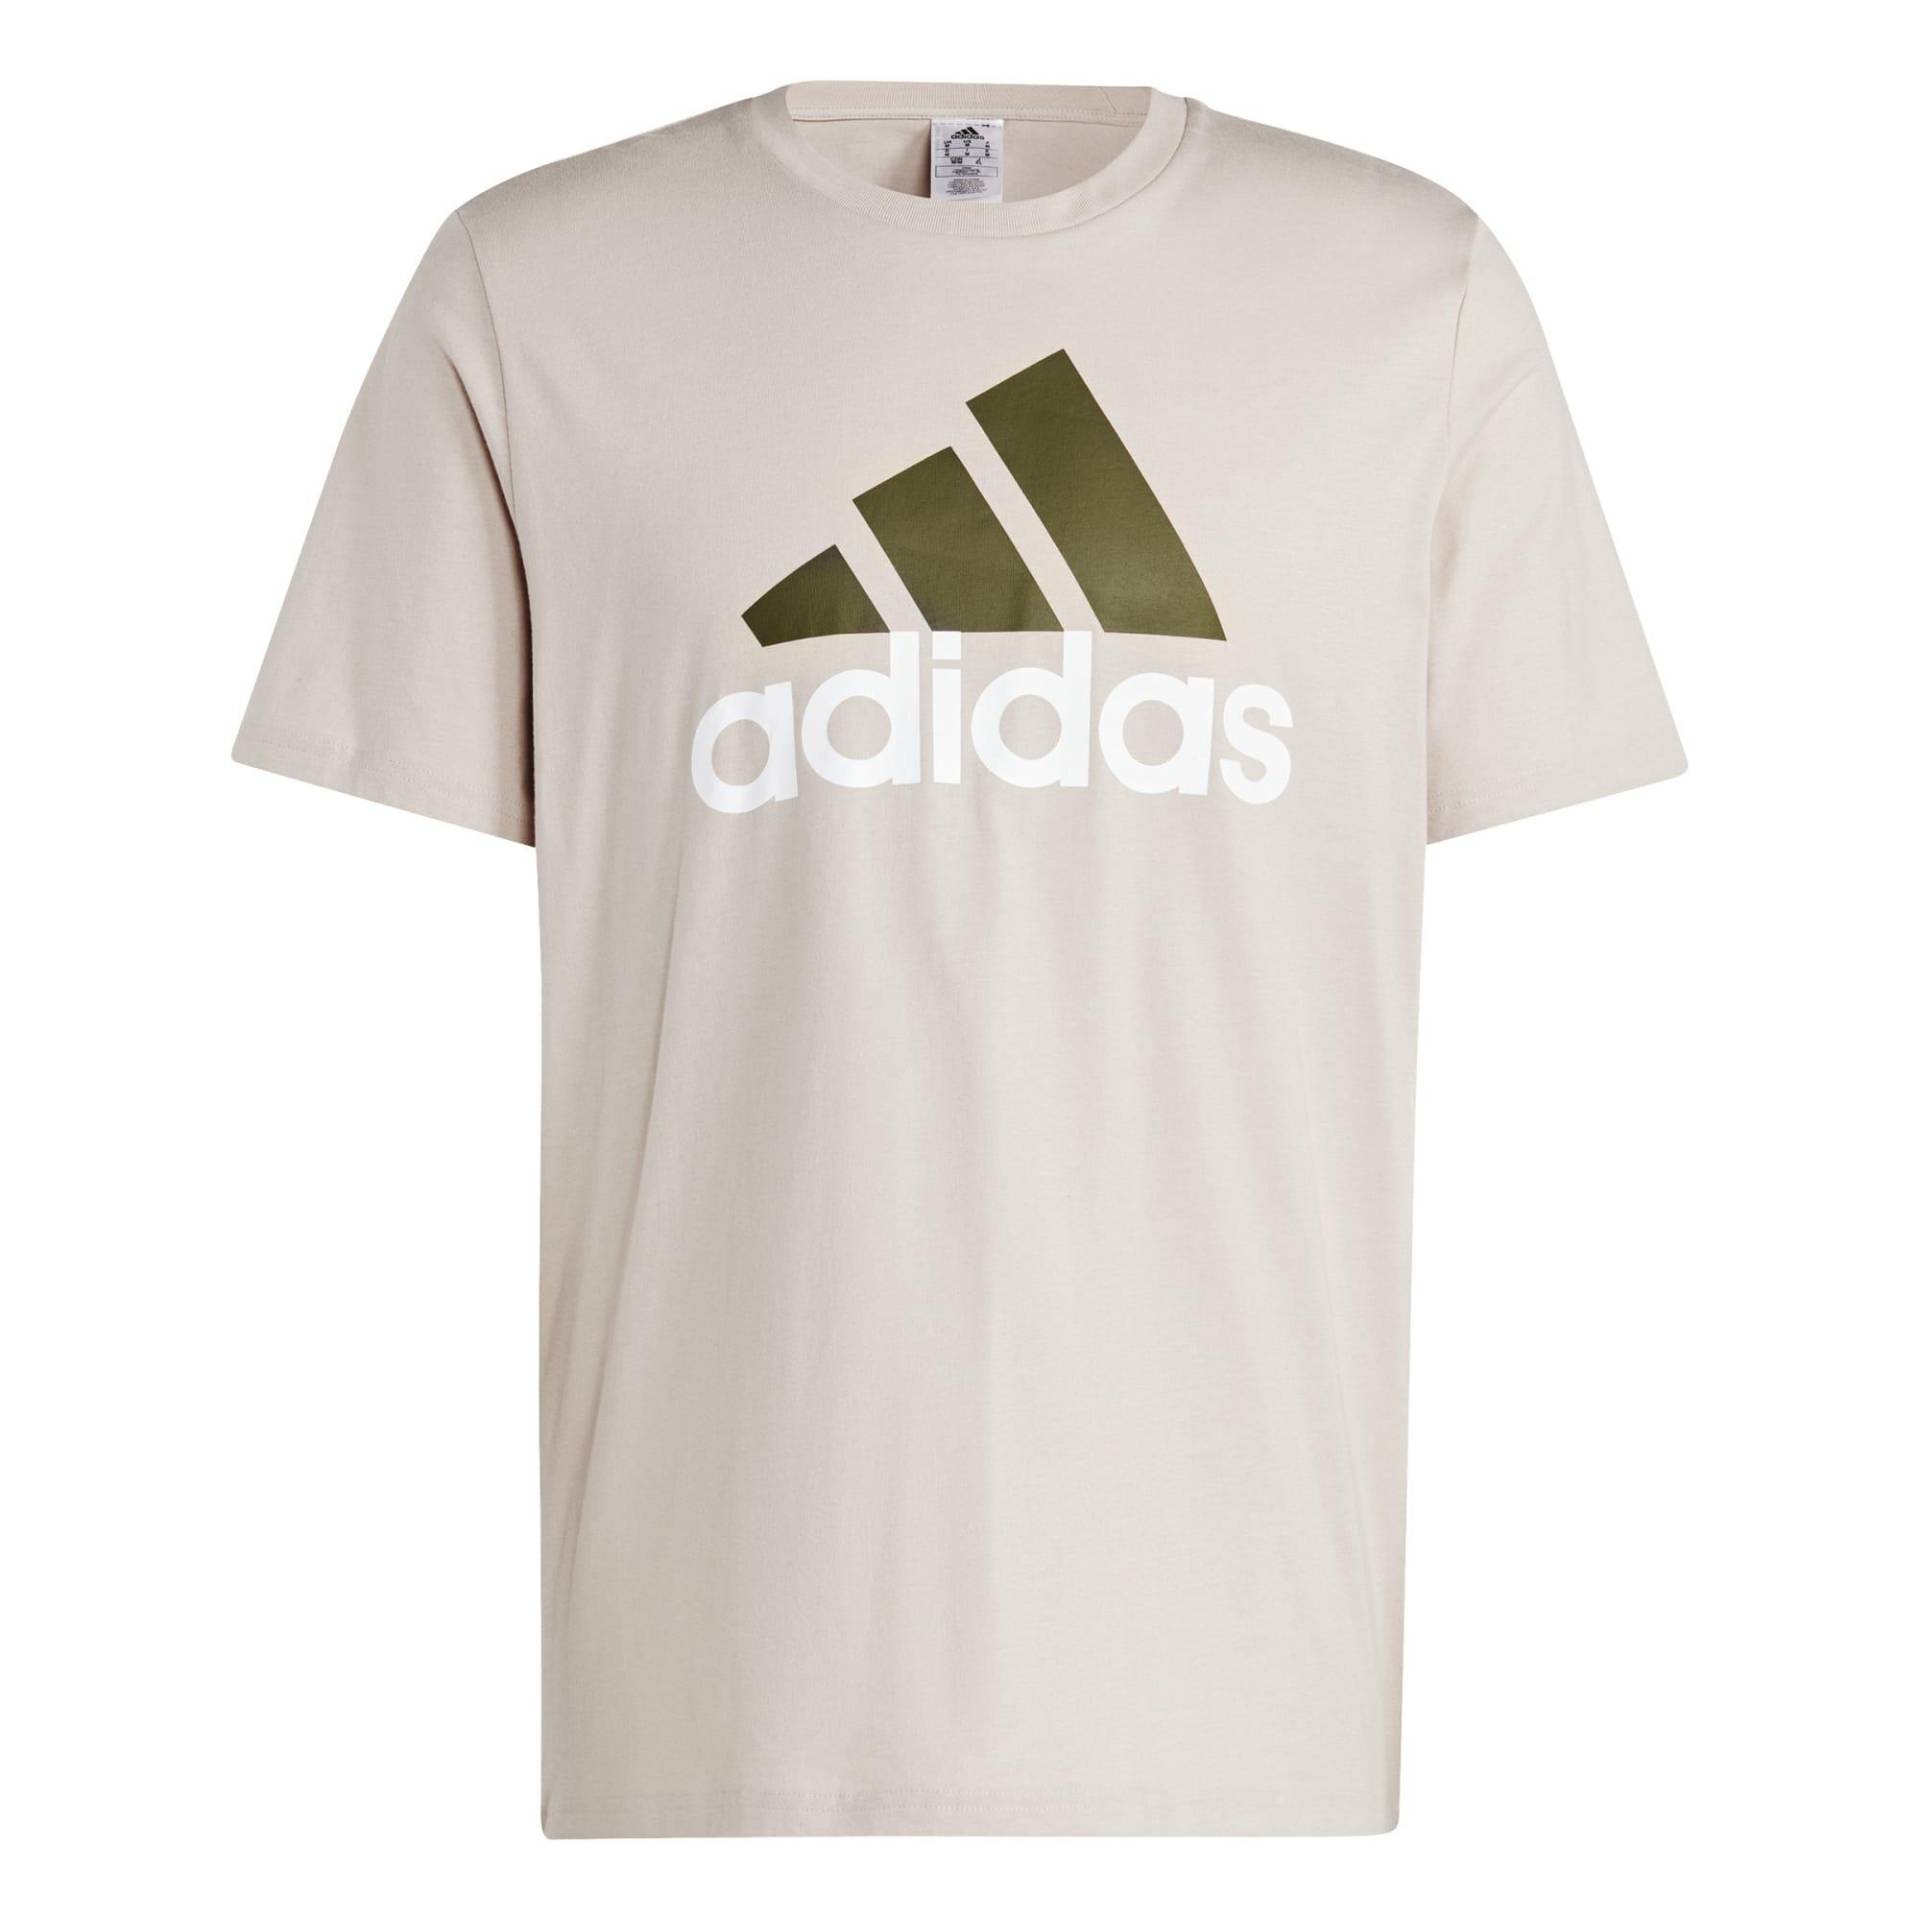 Adidas T-Shirt Herren - taupe von Adidas